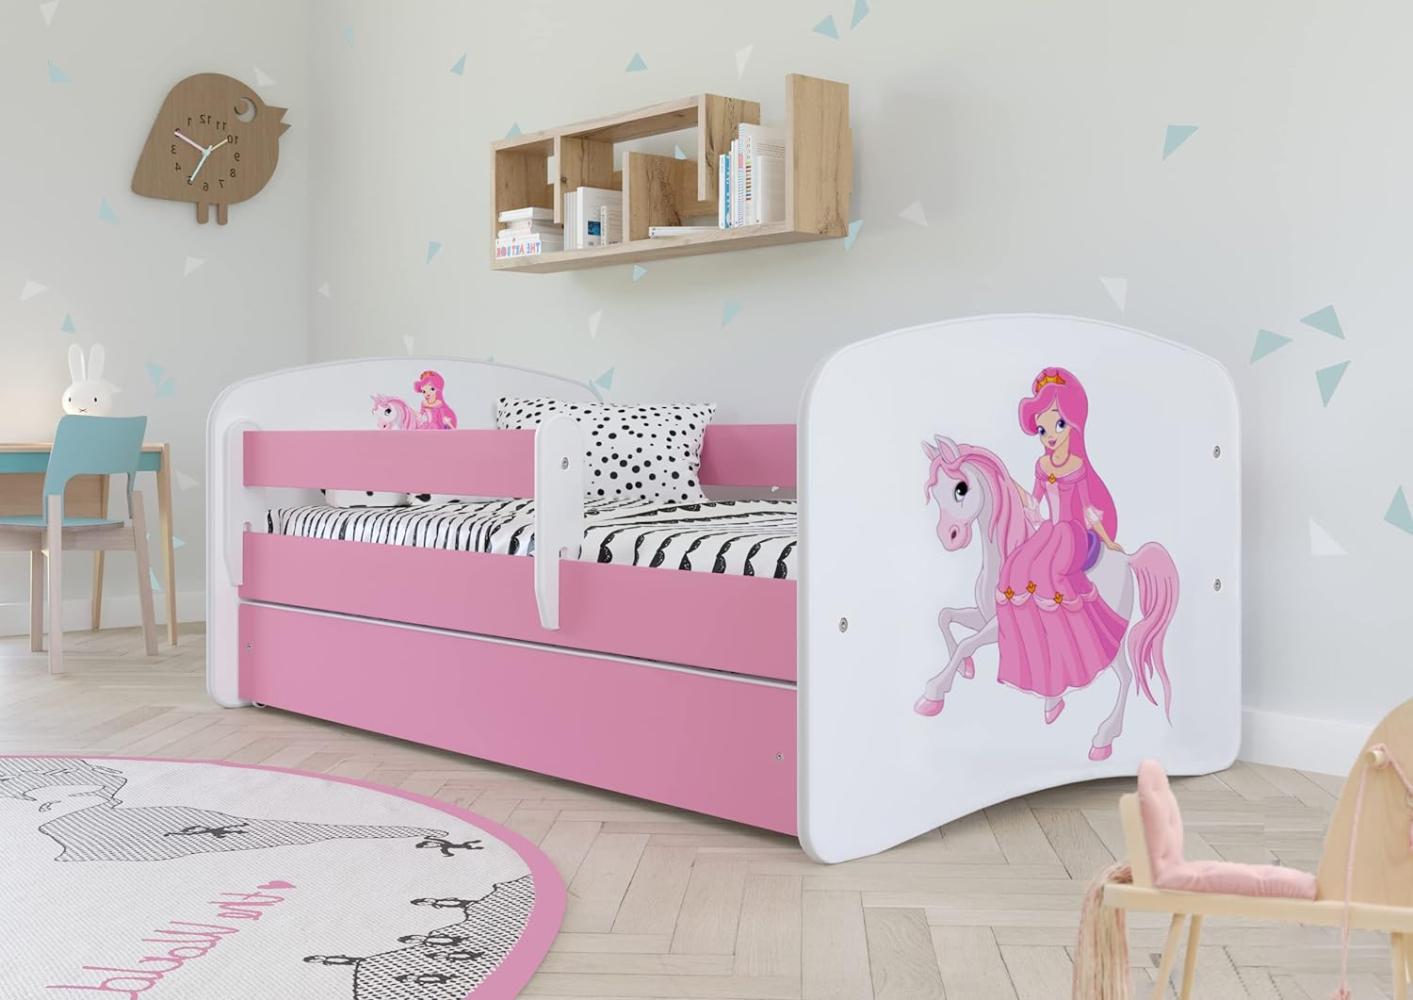 Kocot Kids 'Prinzessin auf dem Pony' Einzelbett pink/weiß 80x180 cm inkl. Rausfallschutz, Matratze, Schublade und Lattenrost Bild 1